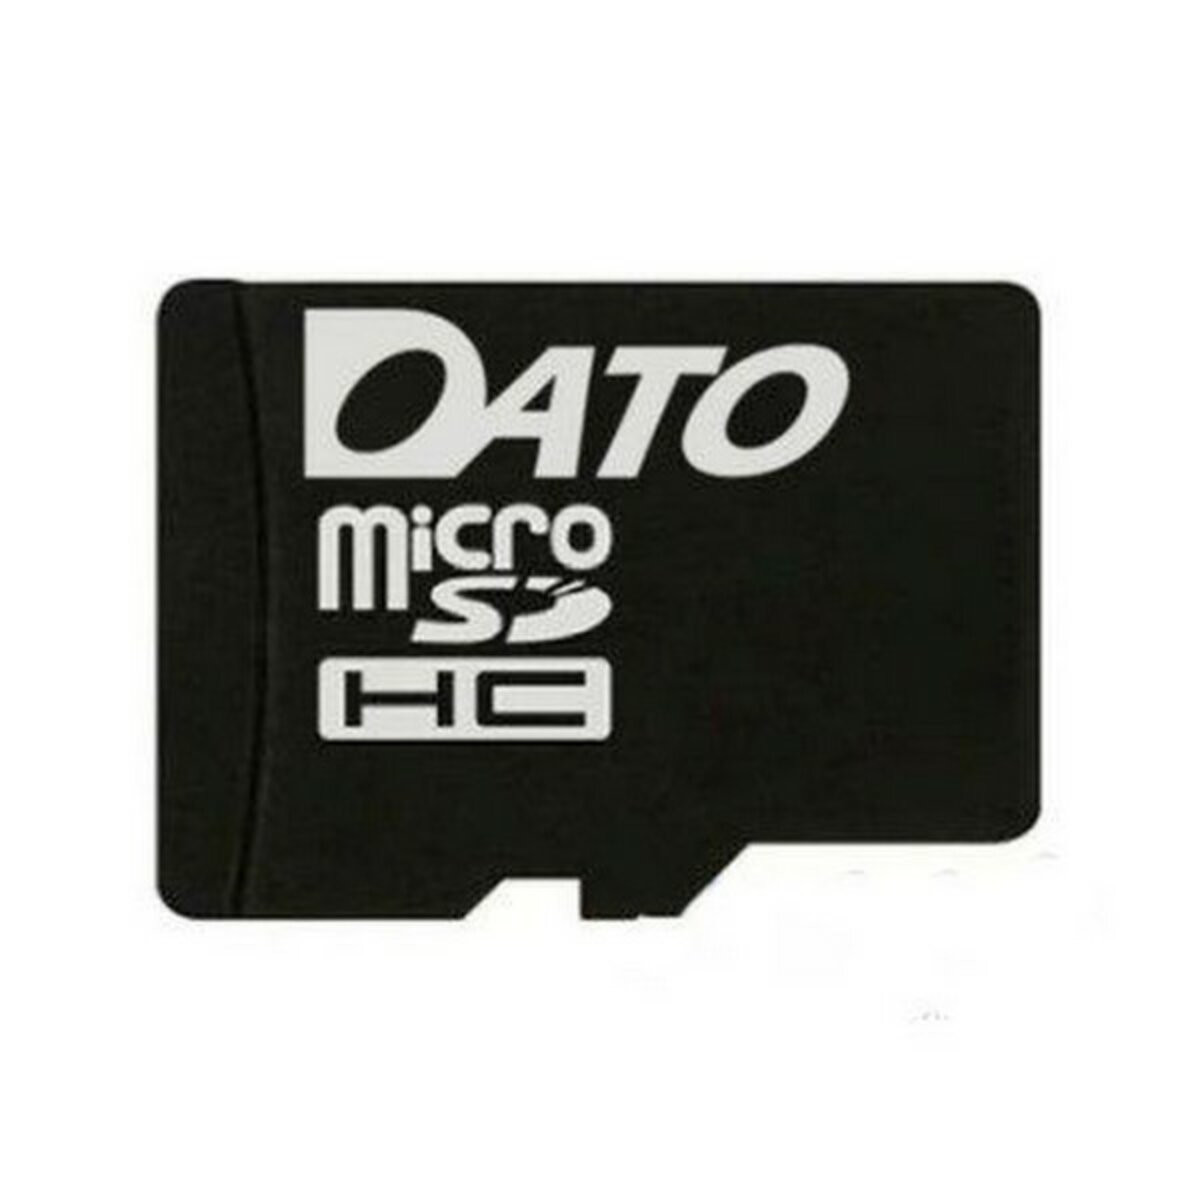 microSDHC DATO 4Gb class 4 - 1